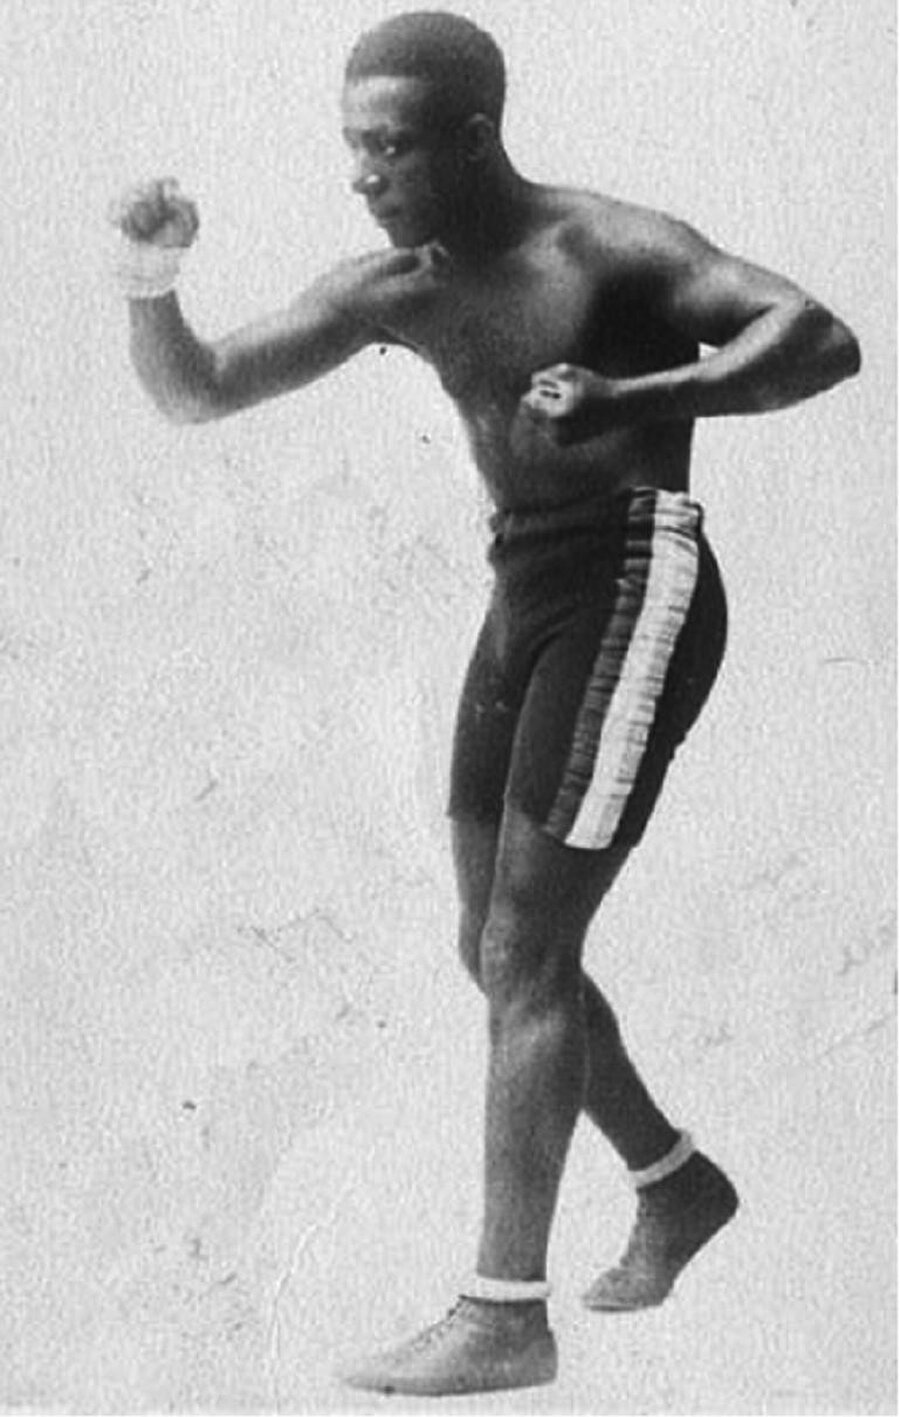 Eugene Bullard boksörlük yaptığı gençlik yıllarında